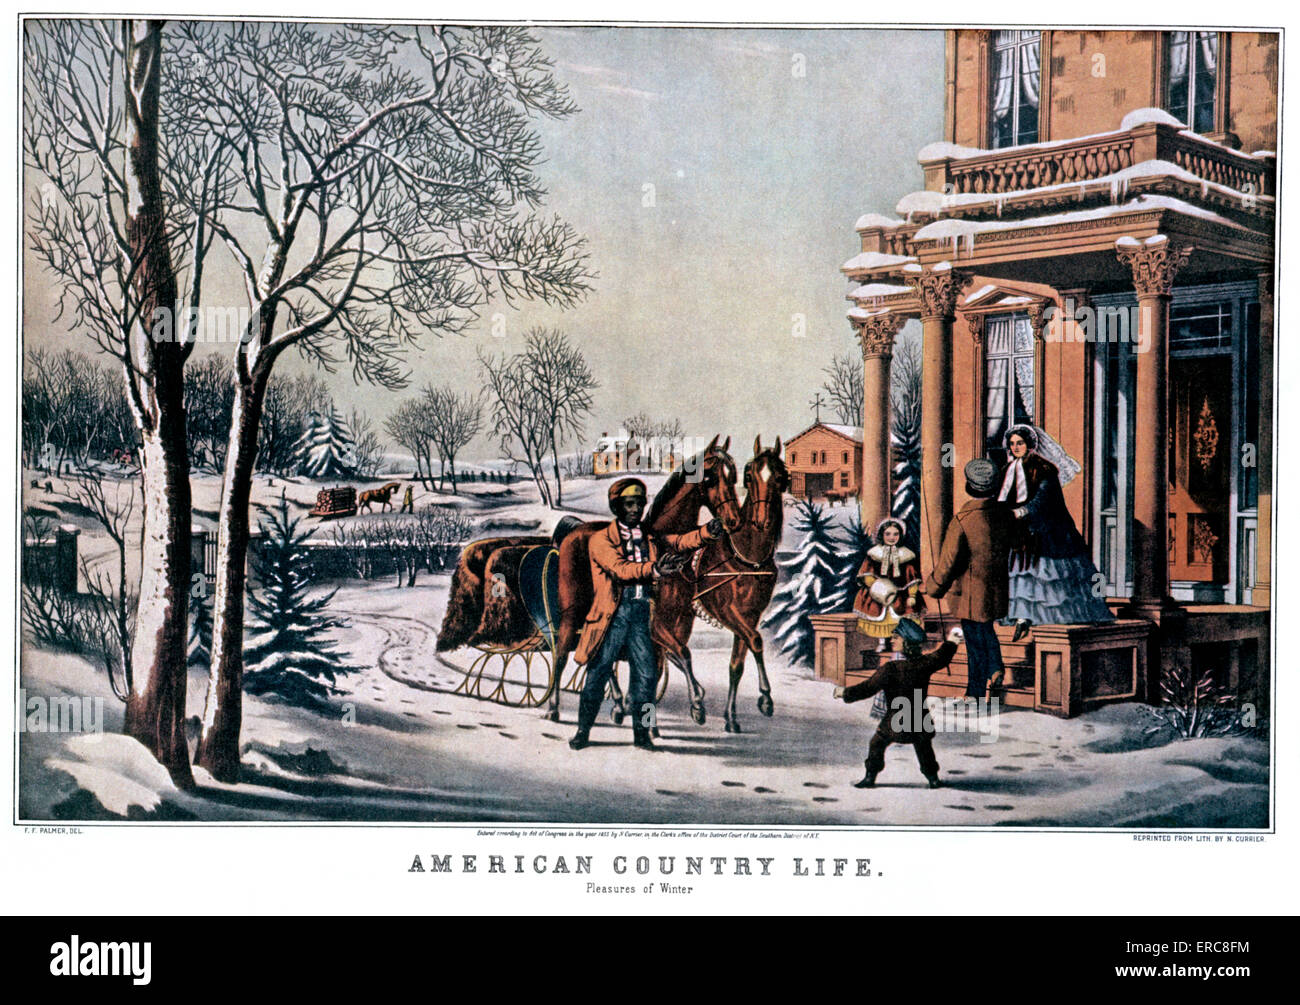 1850ER JAHREN US-AMERIKANISCHER COUNTRY LIFE - WINTERFREUDEN - CURRIER & IVES LITHOGRAPHIE - 1855 Stockfoto